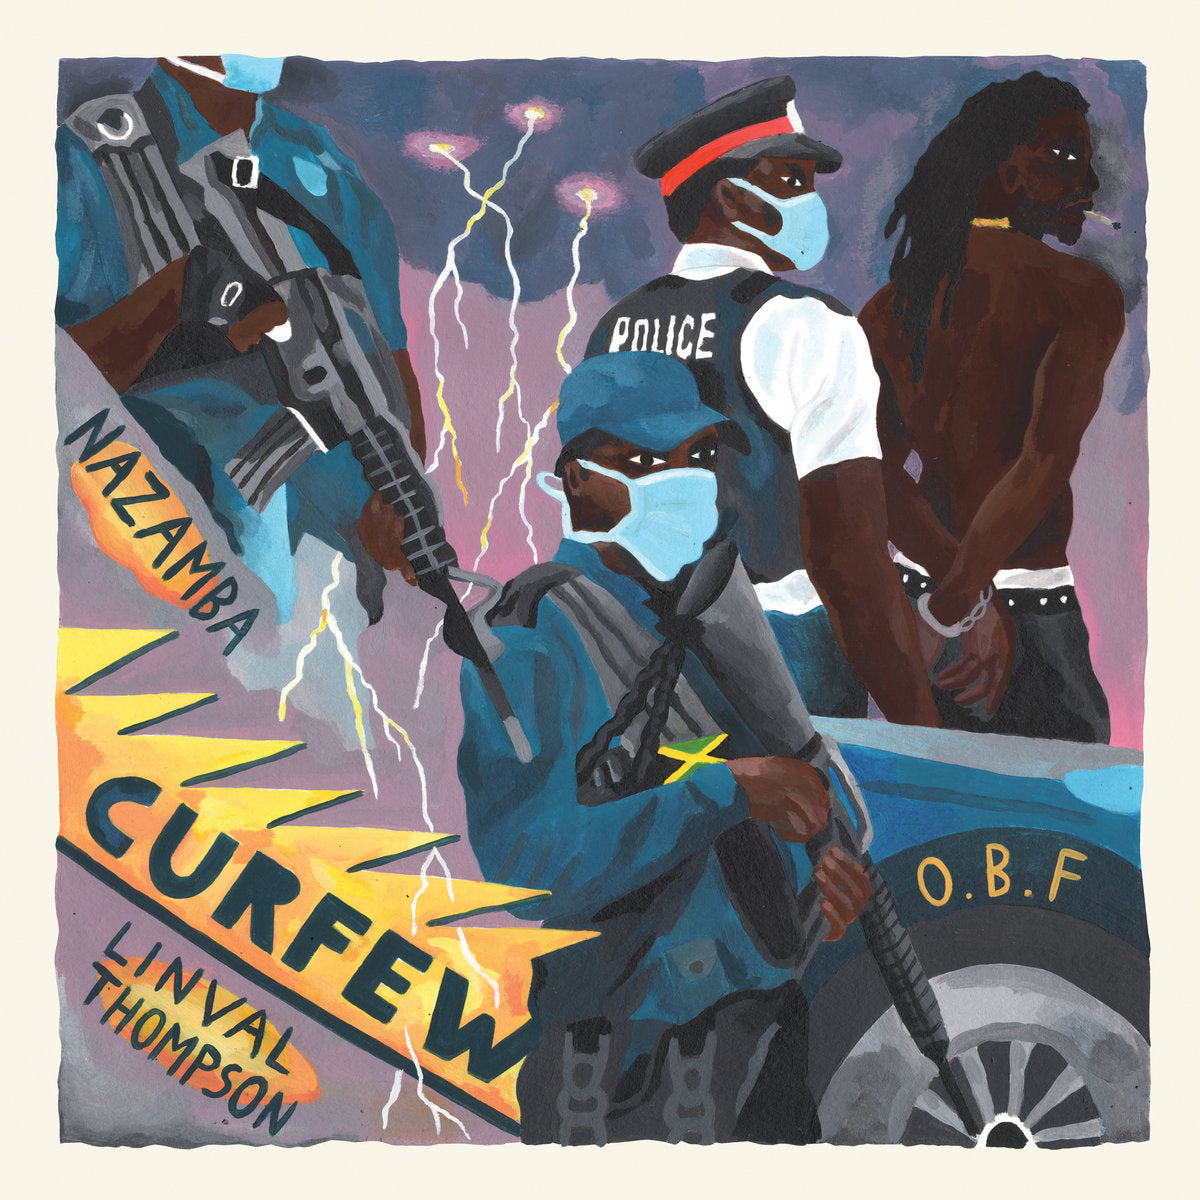 Nazamba, Linval Thompson ＆O.B.F - Curfew